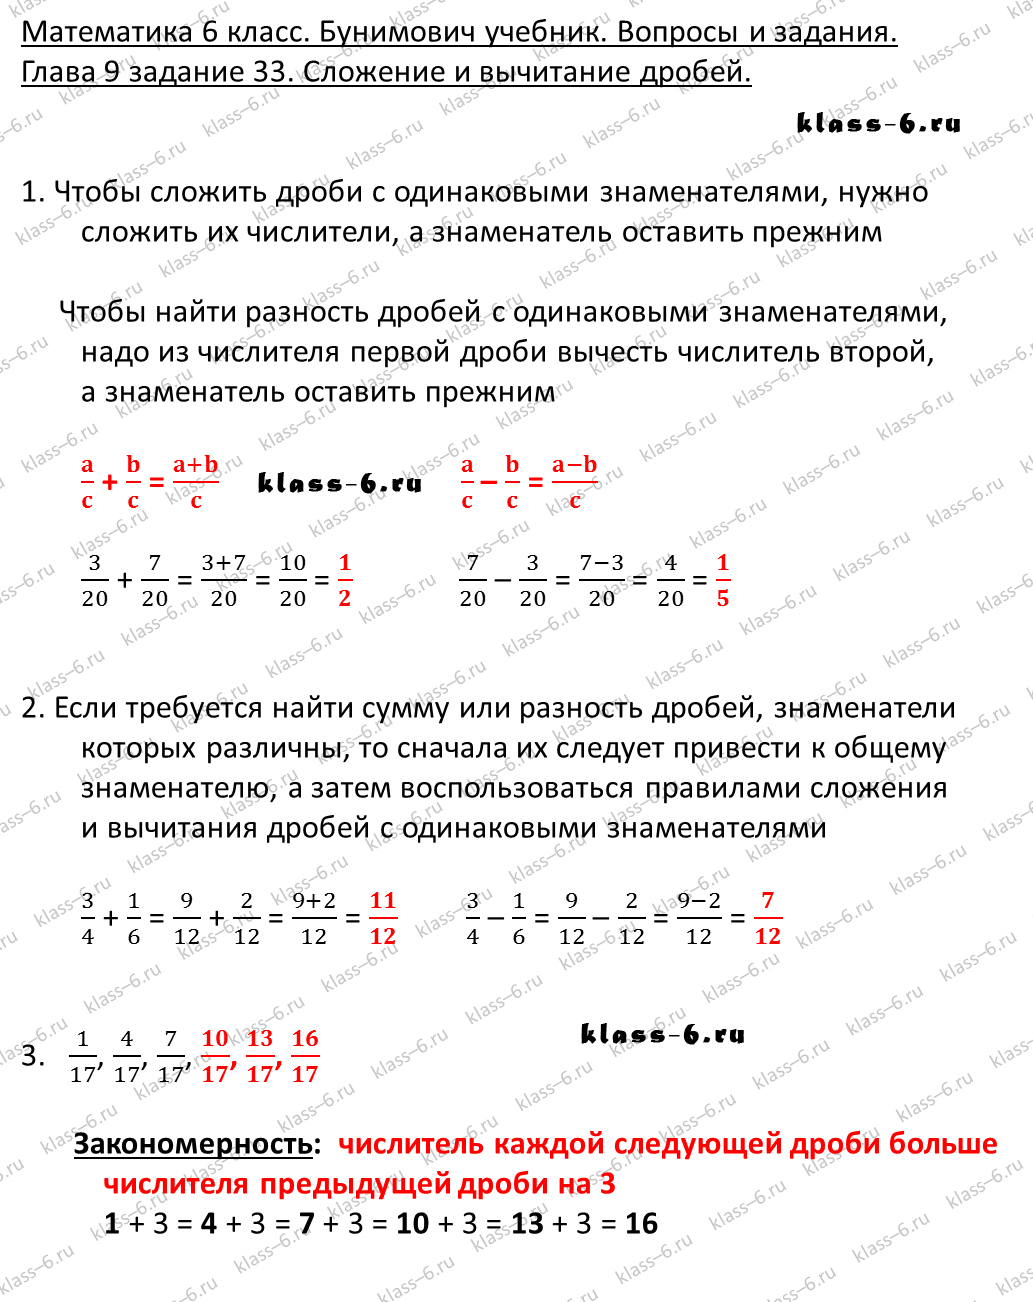 решебник и гдз по математике учебник Бунимович 5 класс вопросы и задания 9-33